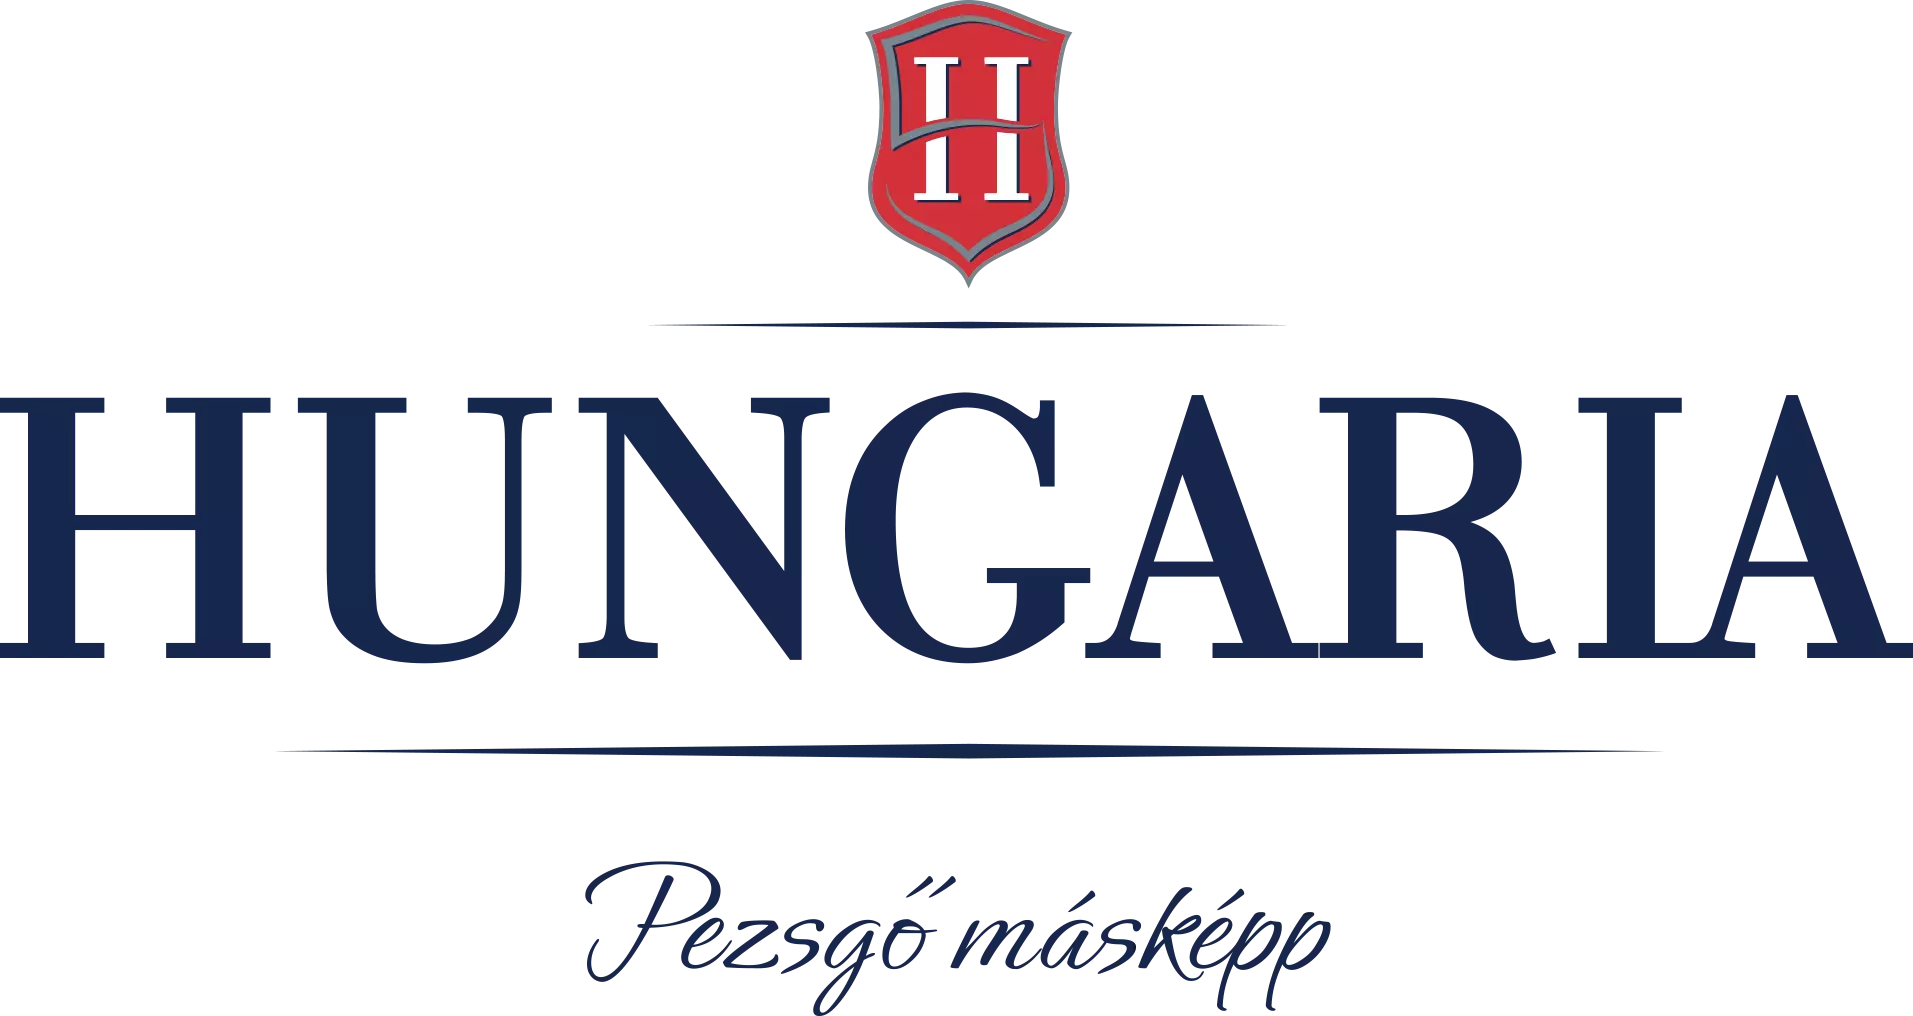 Hungária